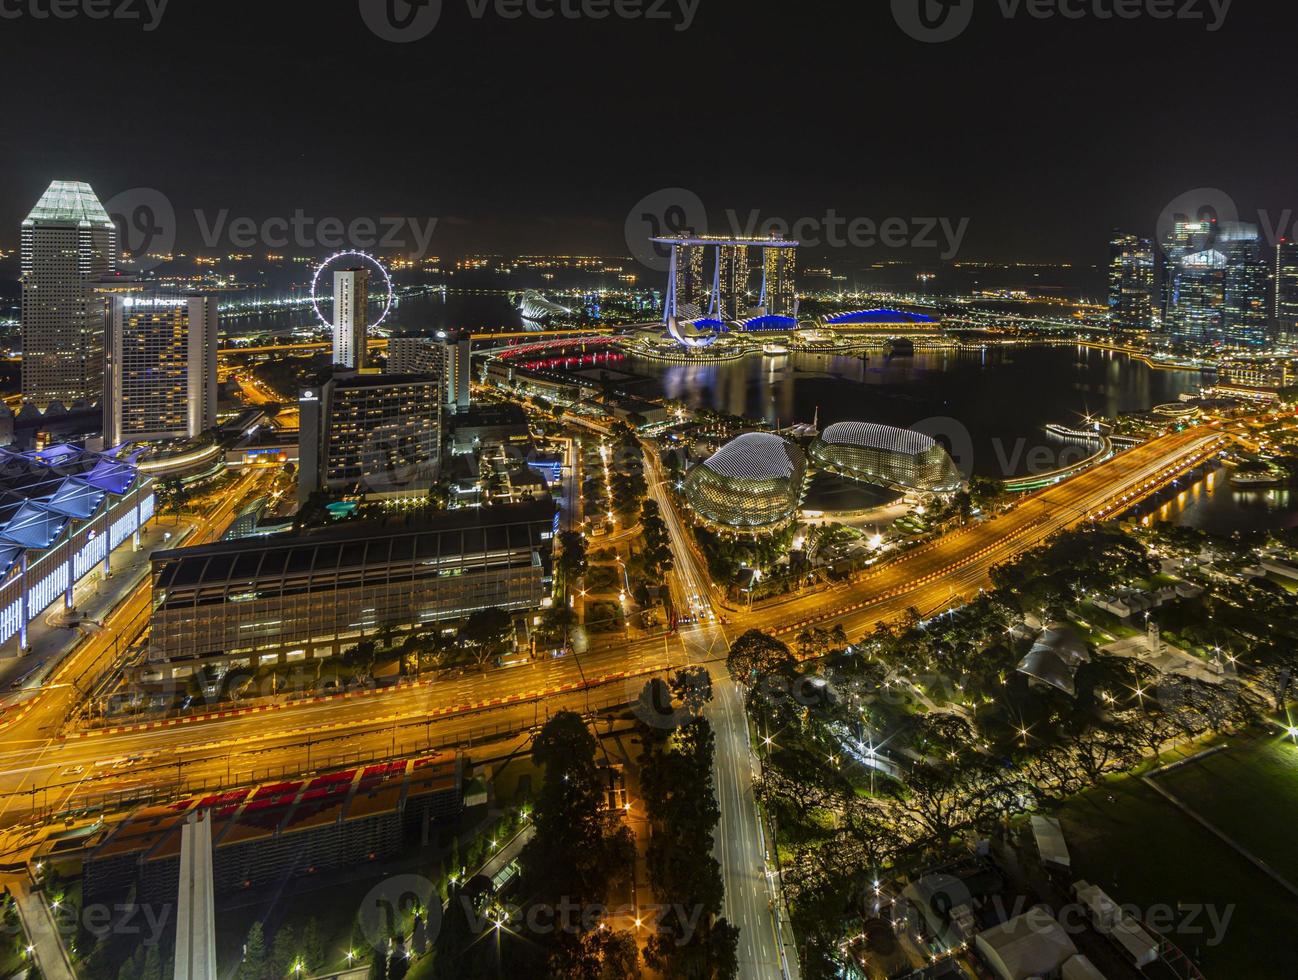 antenne panoramisch afbeelding van Singapore horizon en tuinen door de baai gedurende voorbereiding voor formule 1 ras in de nacht in herfst foto